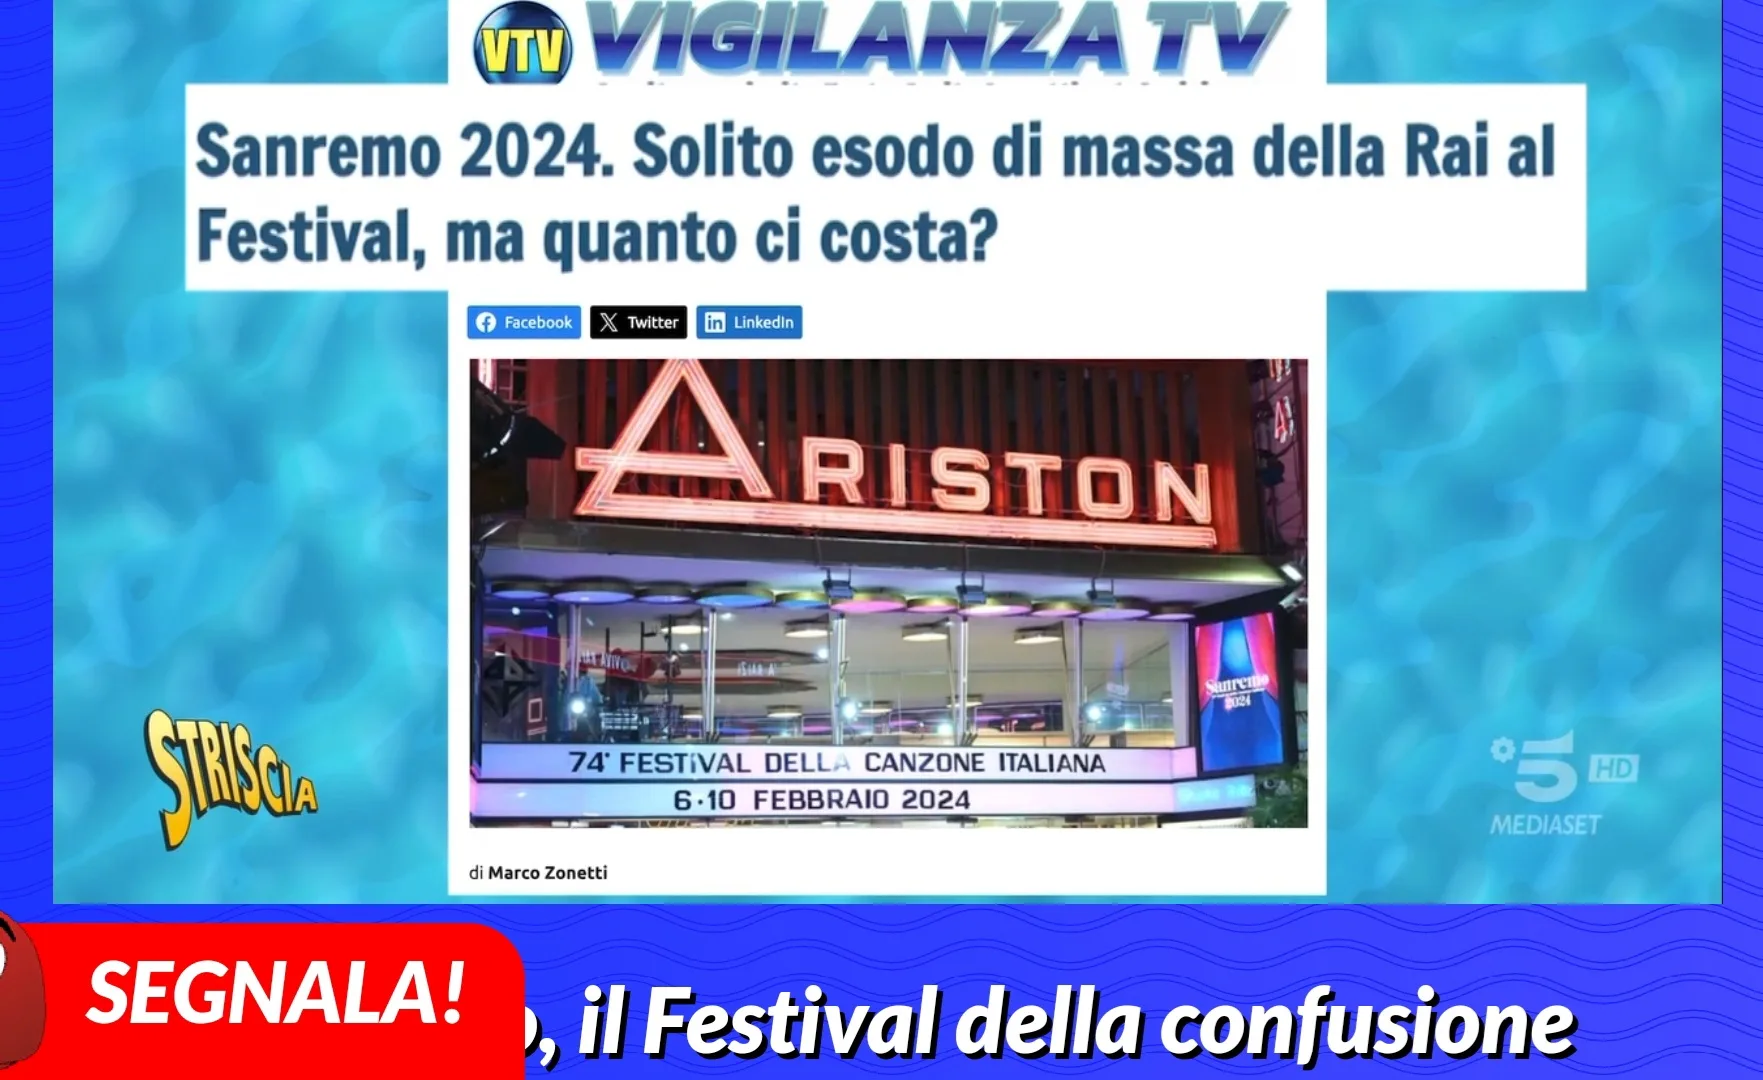 Sanremo 2024. Solito esodo di massa della Rai al Festival, ma quanto ci costa?